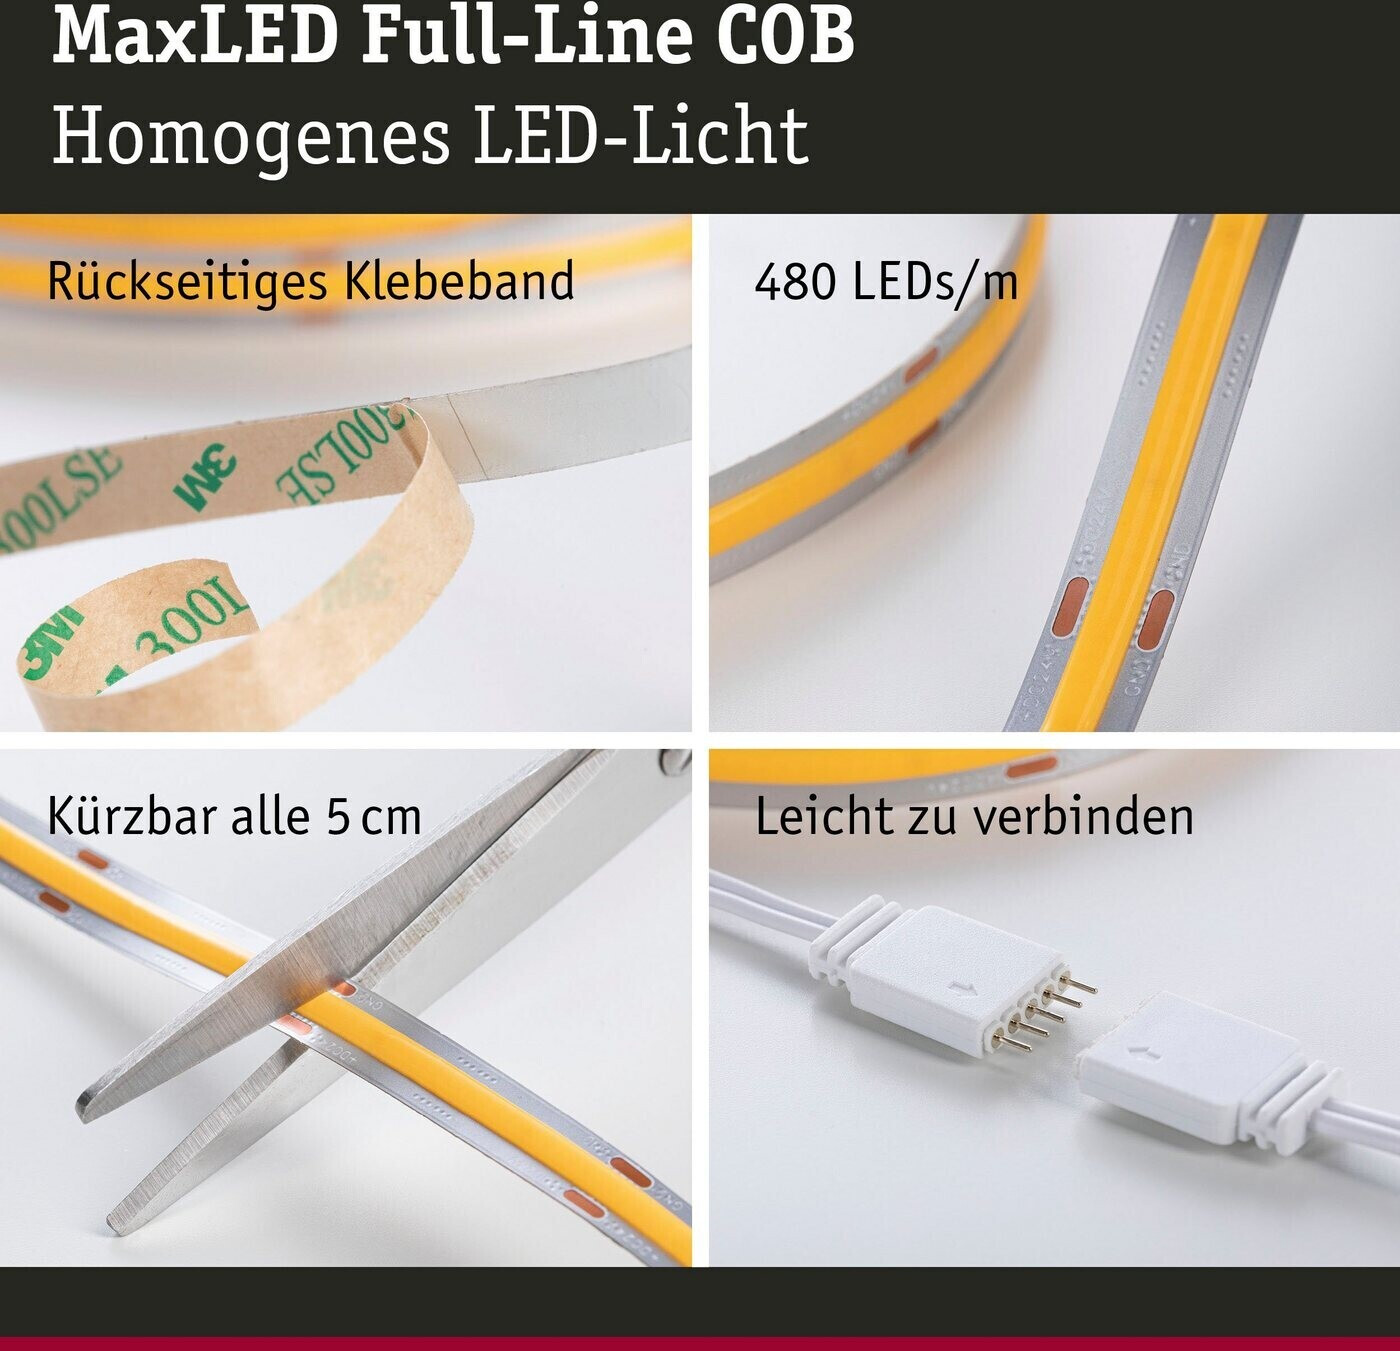 (71049) € 3m Preisvergleich COB MaxLED 1000 56,51 | Stripe LED Full-Line Basisset ab Paulmann bei